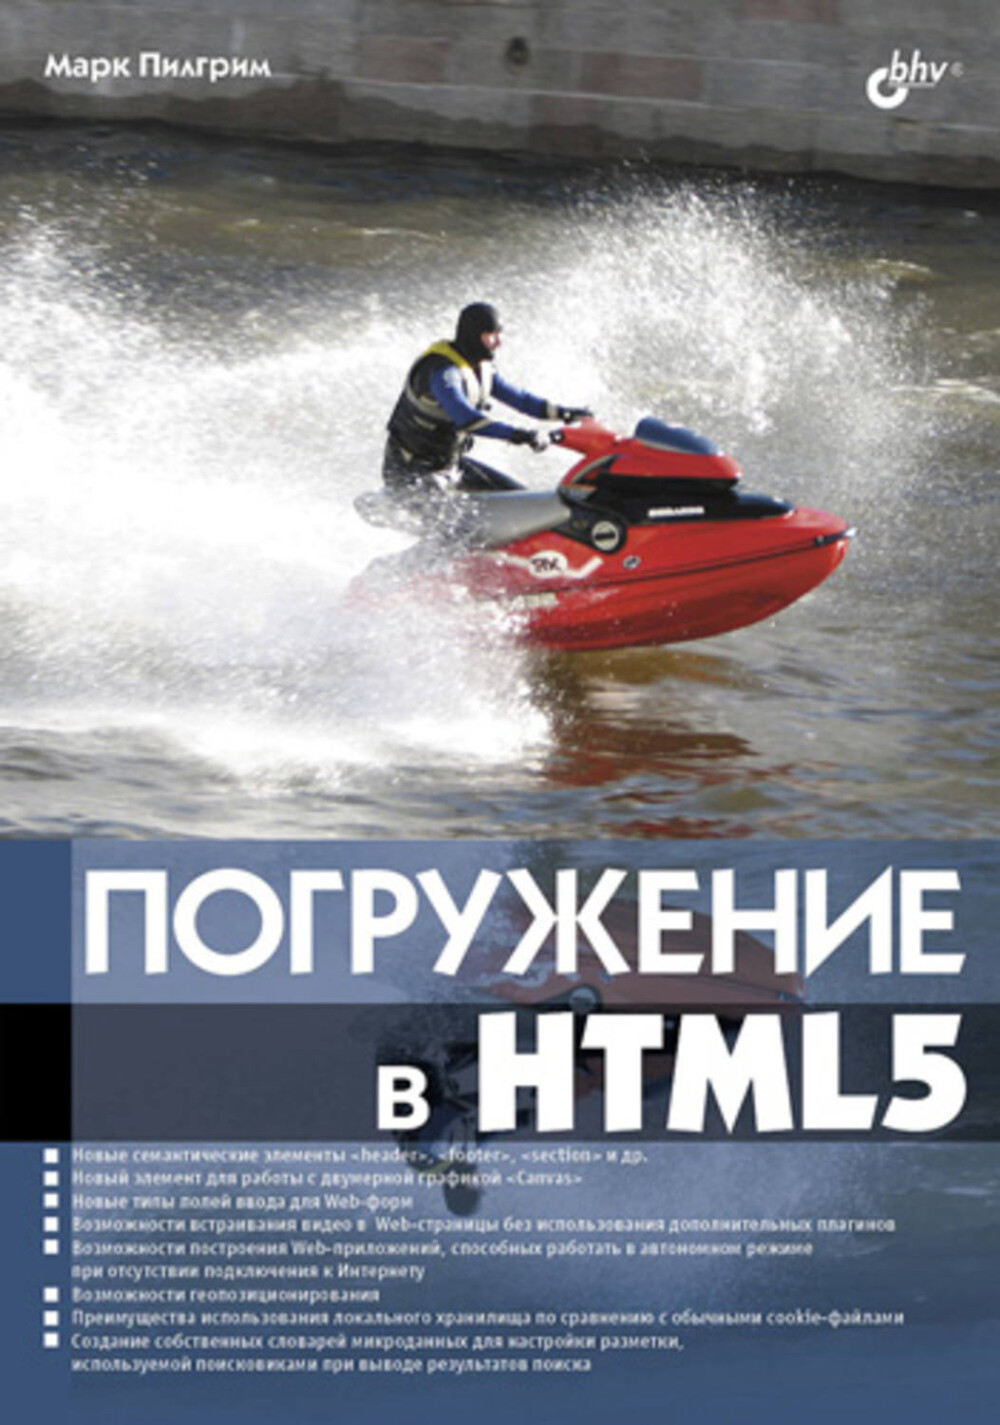 Марк Погружение в HTML5 2011